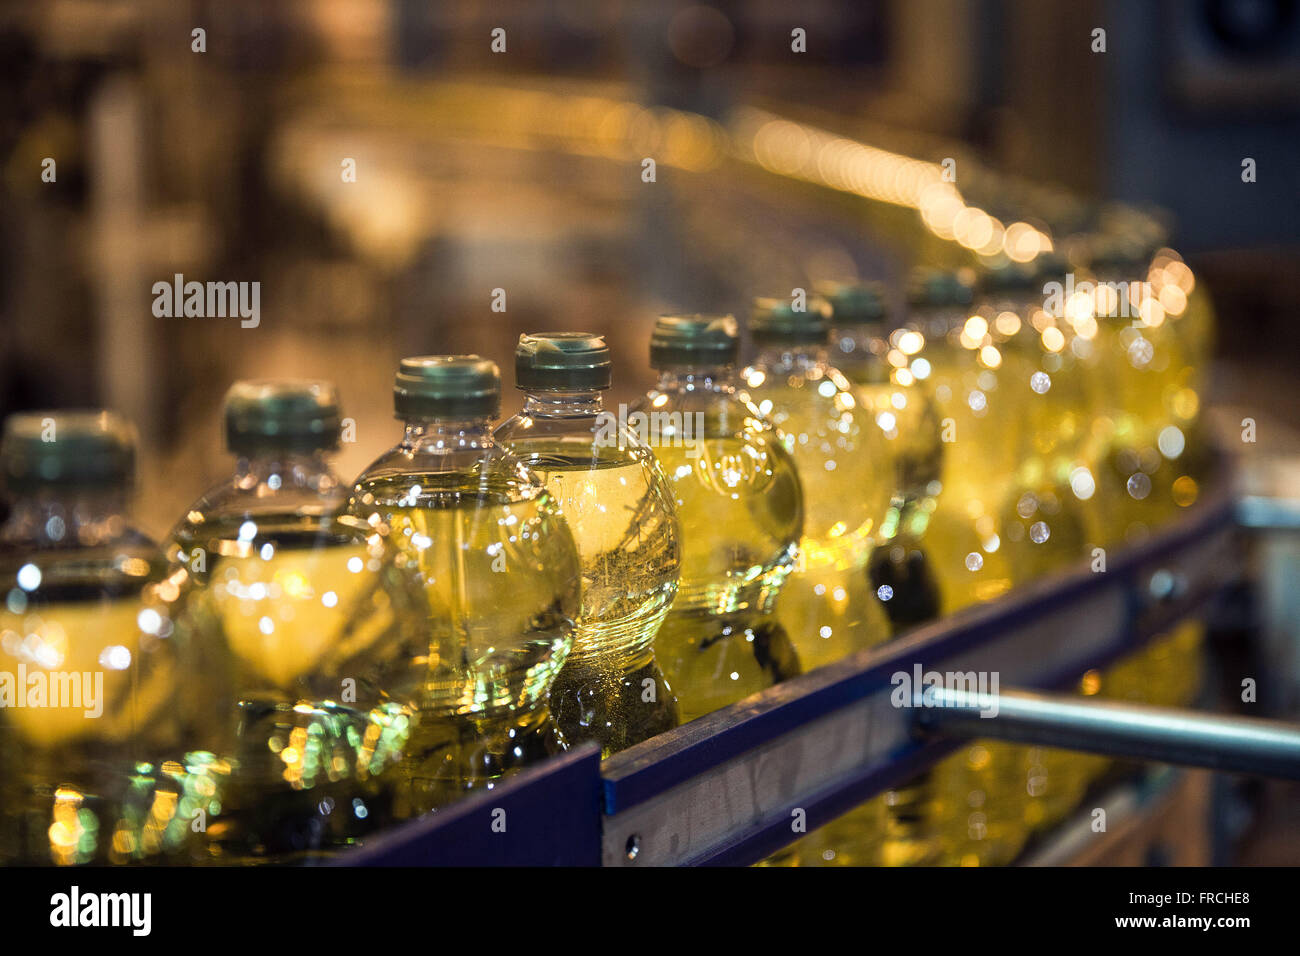 Detalhe de envase de garrafas de óleo vegetal de soja em  agroindústria Stock Photo